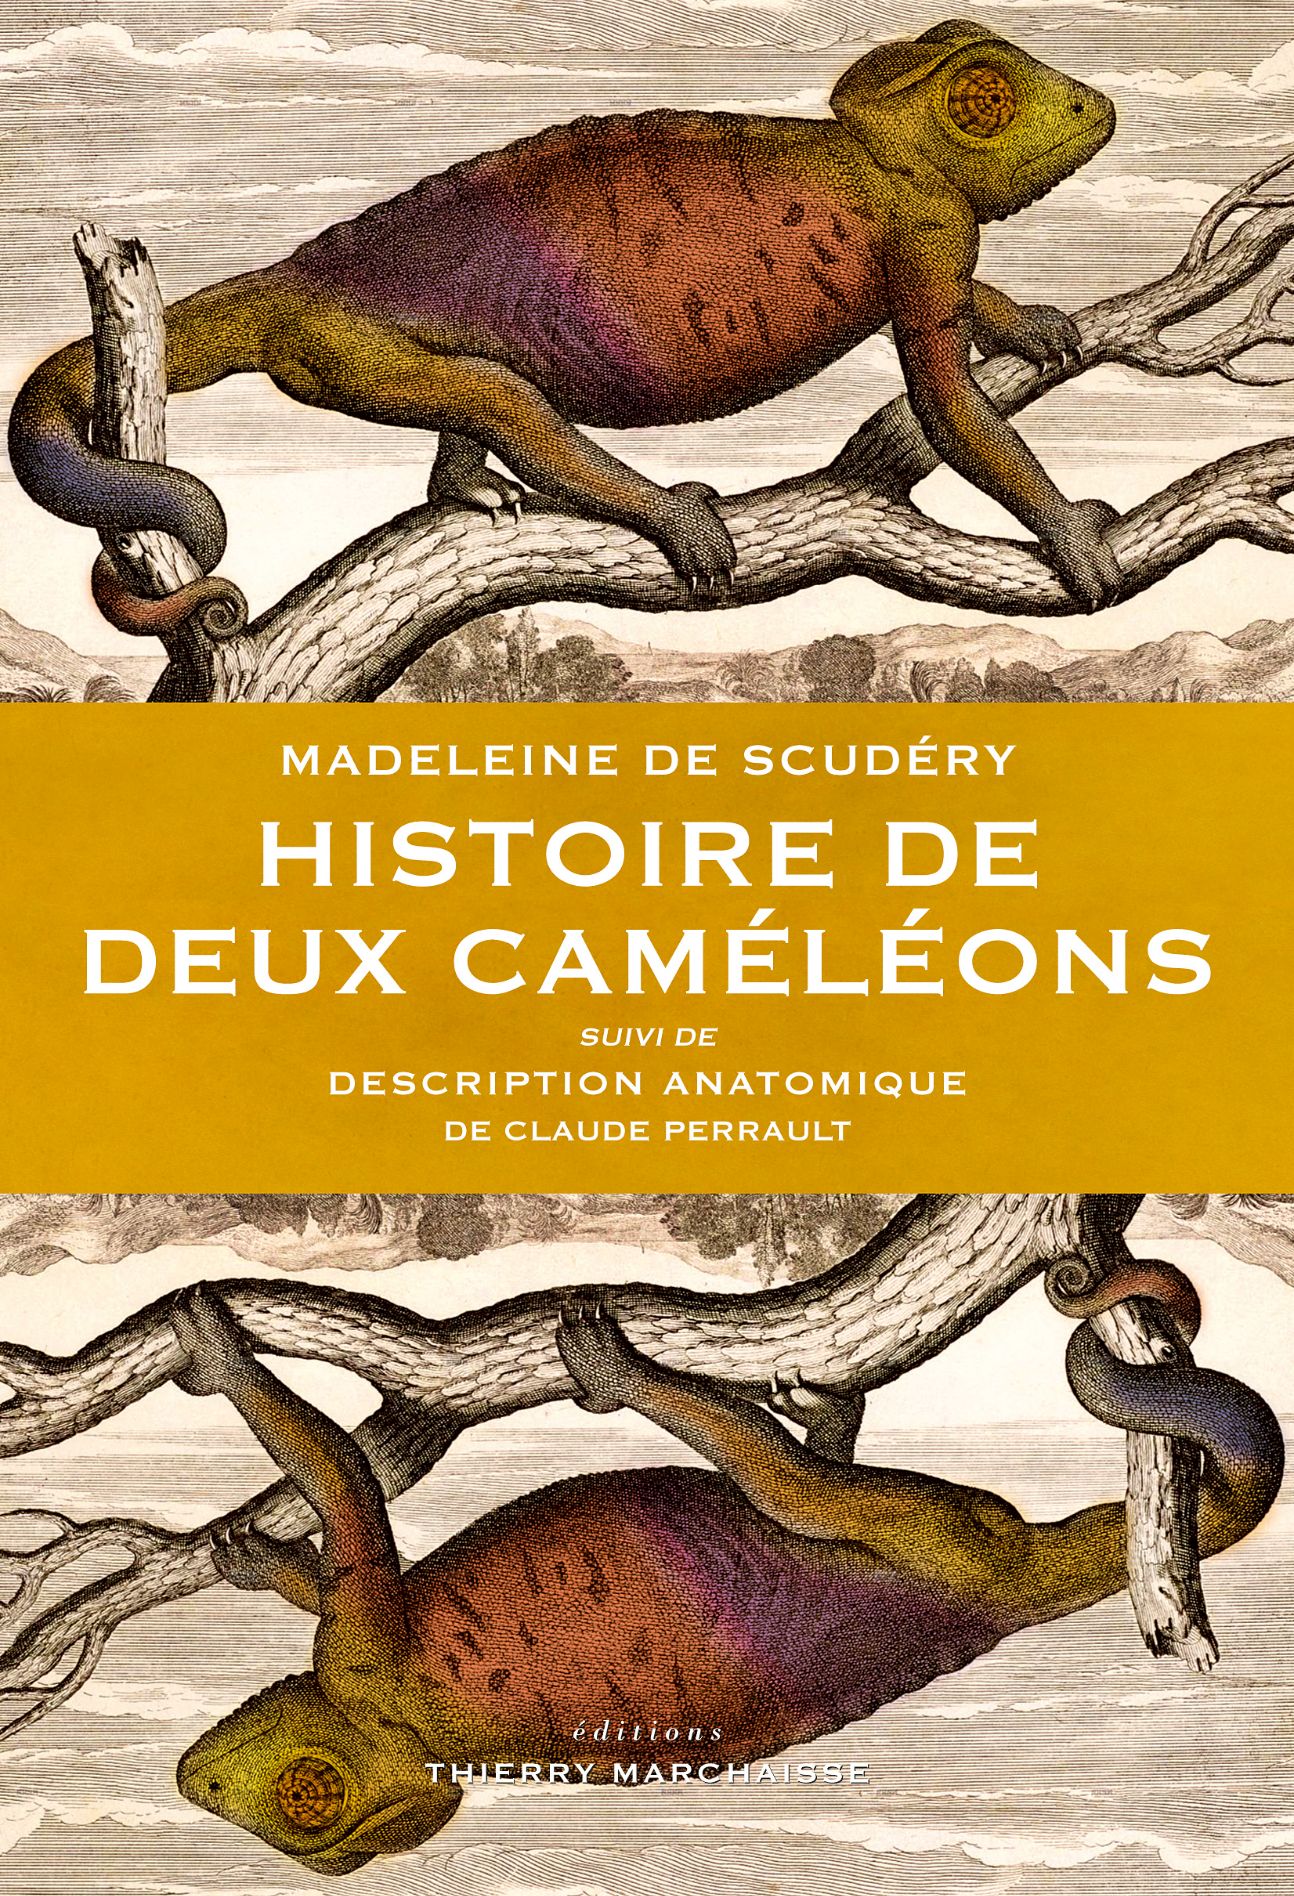 Madeleine de Scudéry, Histoire de deux caméléons, suivi deDescription anatomique de Claude Perrault